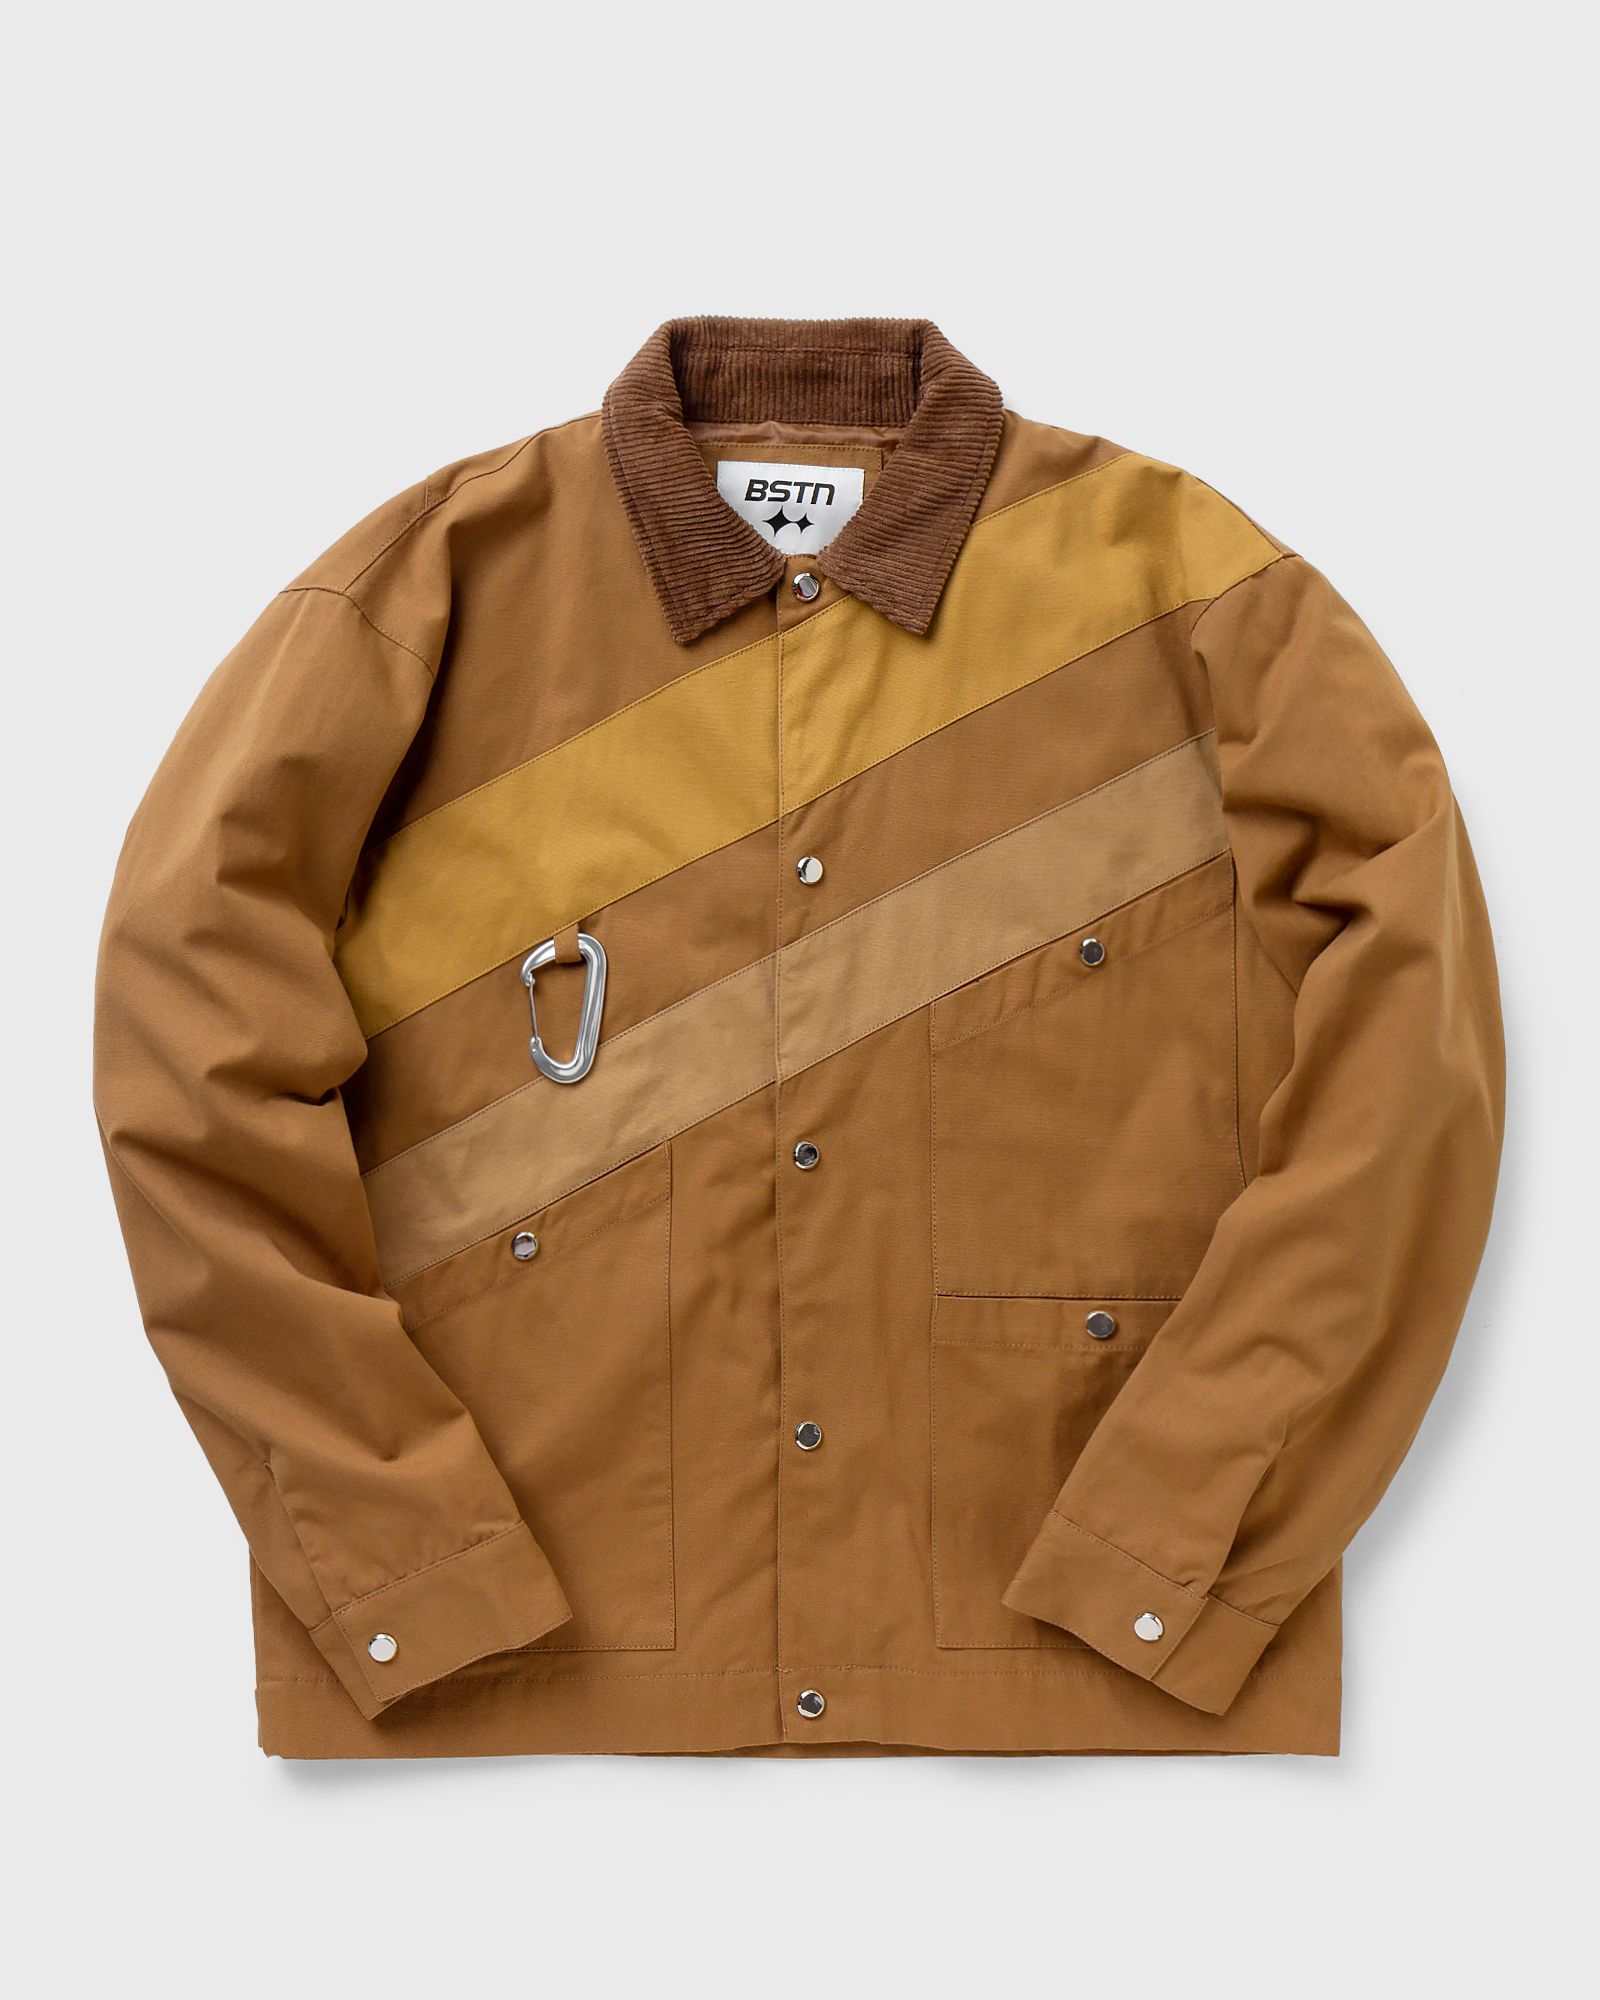 BSTN Brand - workwear warm up jacket men denim jackets|overshirts brown in größe:xl